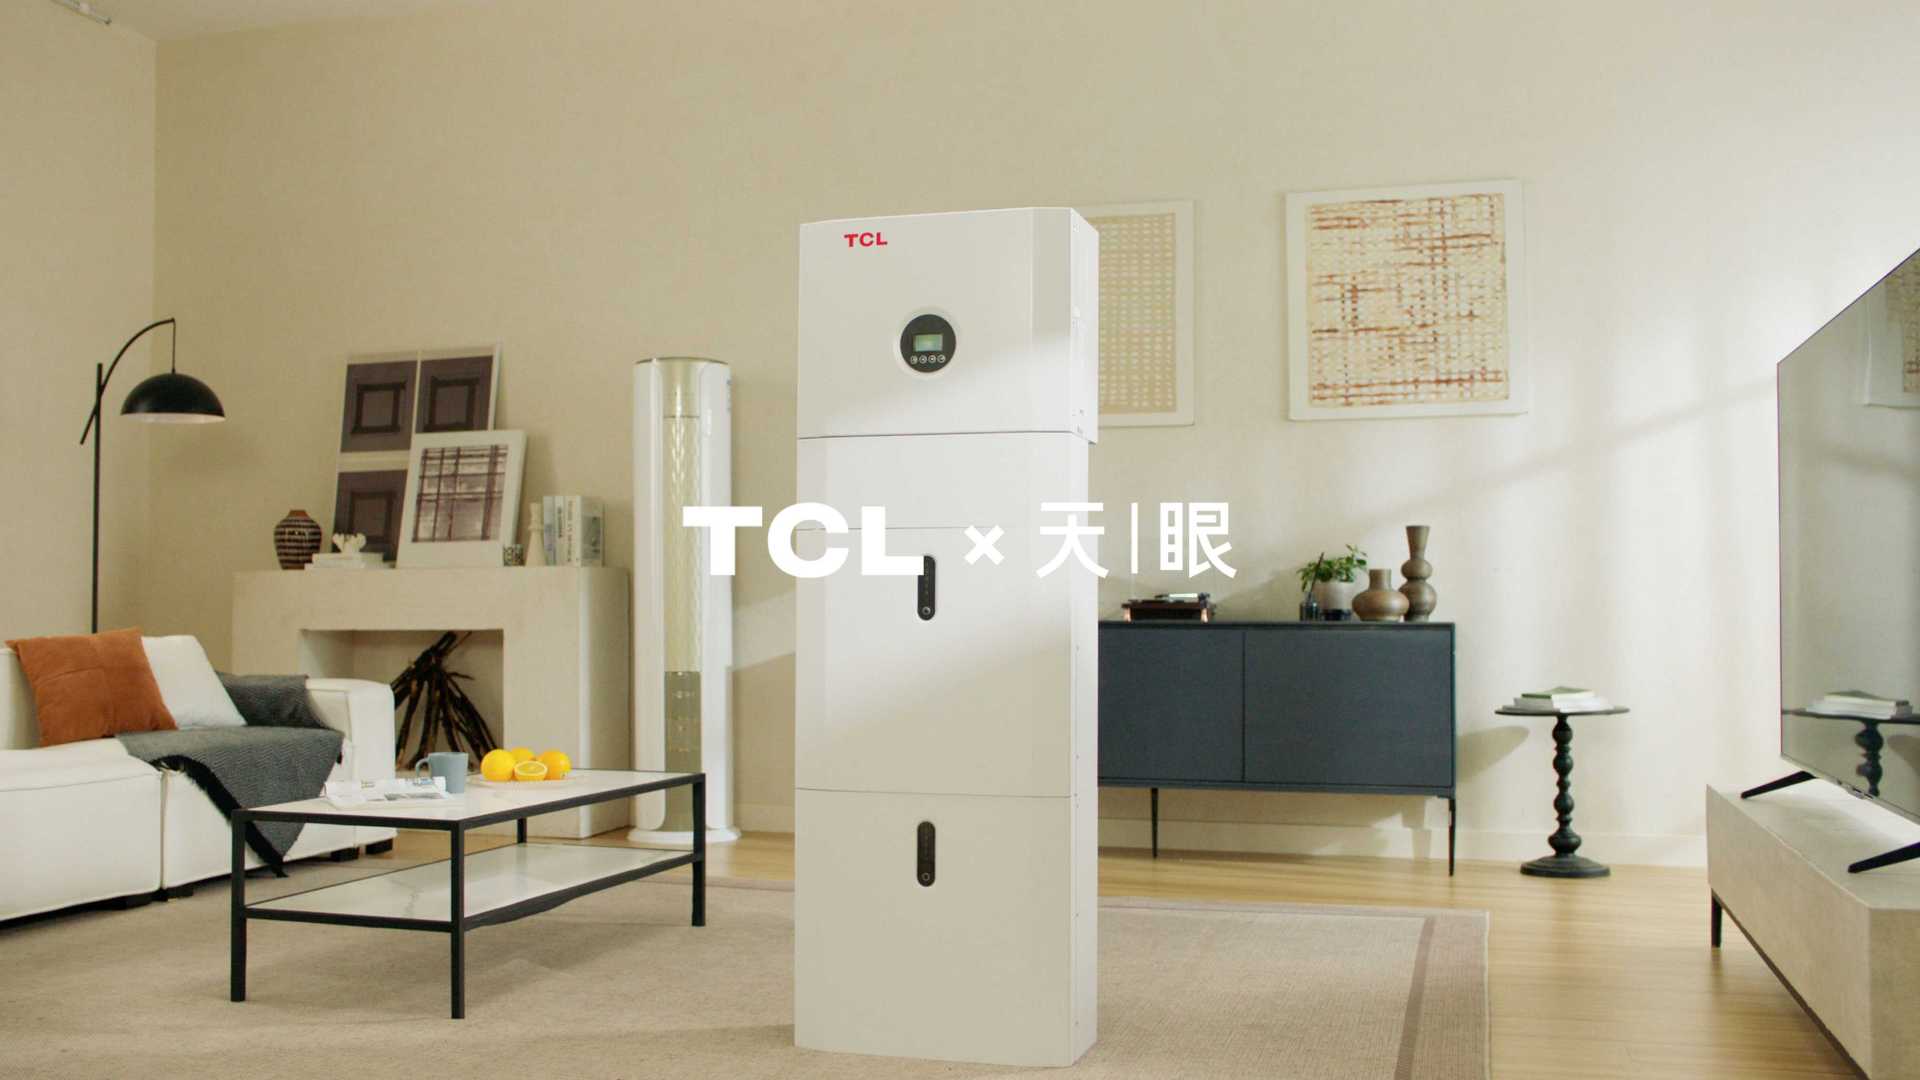 TCL光伏科技发布会产品展示片